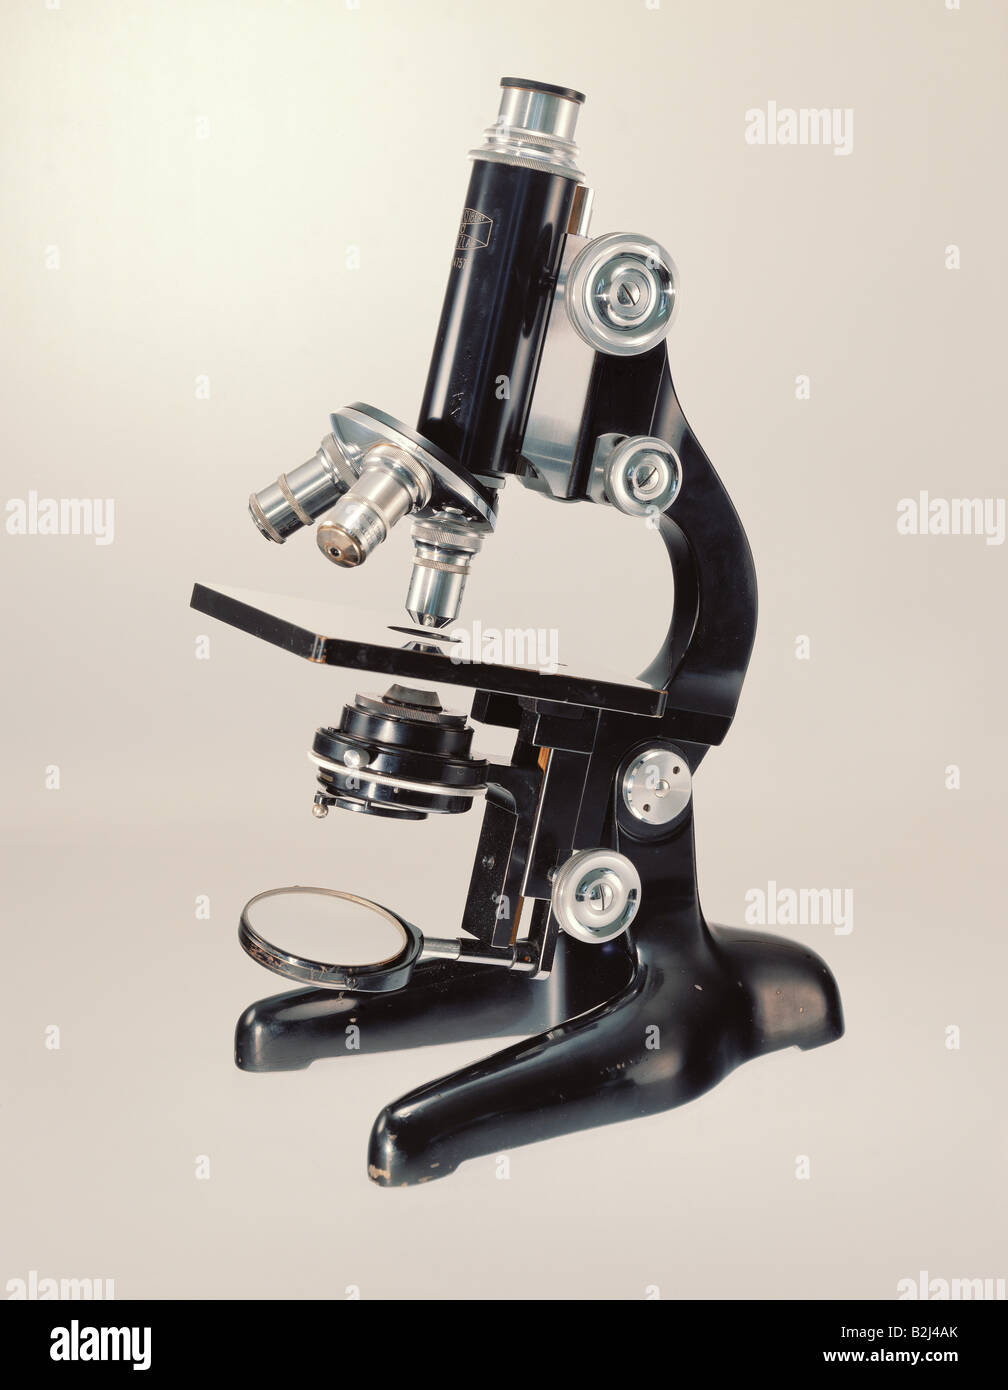 La ciencia, la óptica, microscopio, Seibert, Wetzlar, Die Neue Sammlung (La Nueva Colección), histórico de Munich, Alemania, histórico Foto de stock